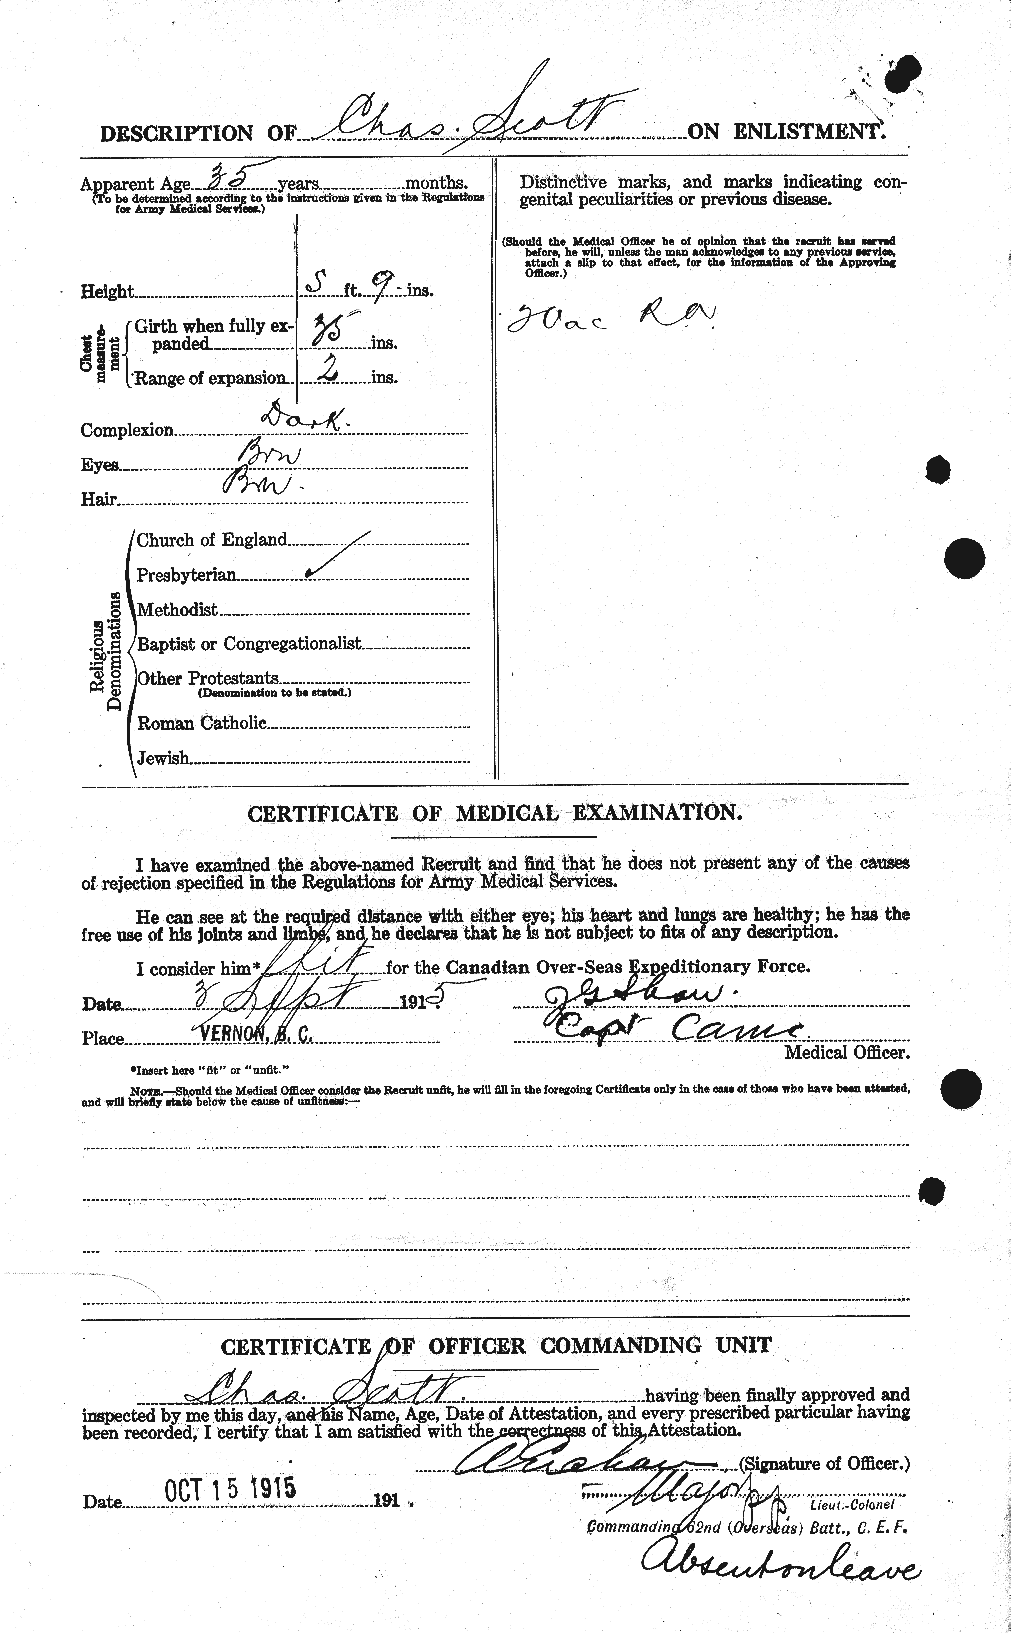 Dossiers du Personnel de la Première Guerre mondiale - CEC 086189b